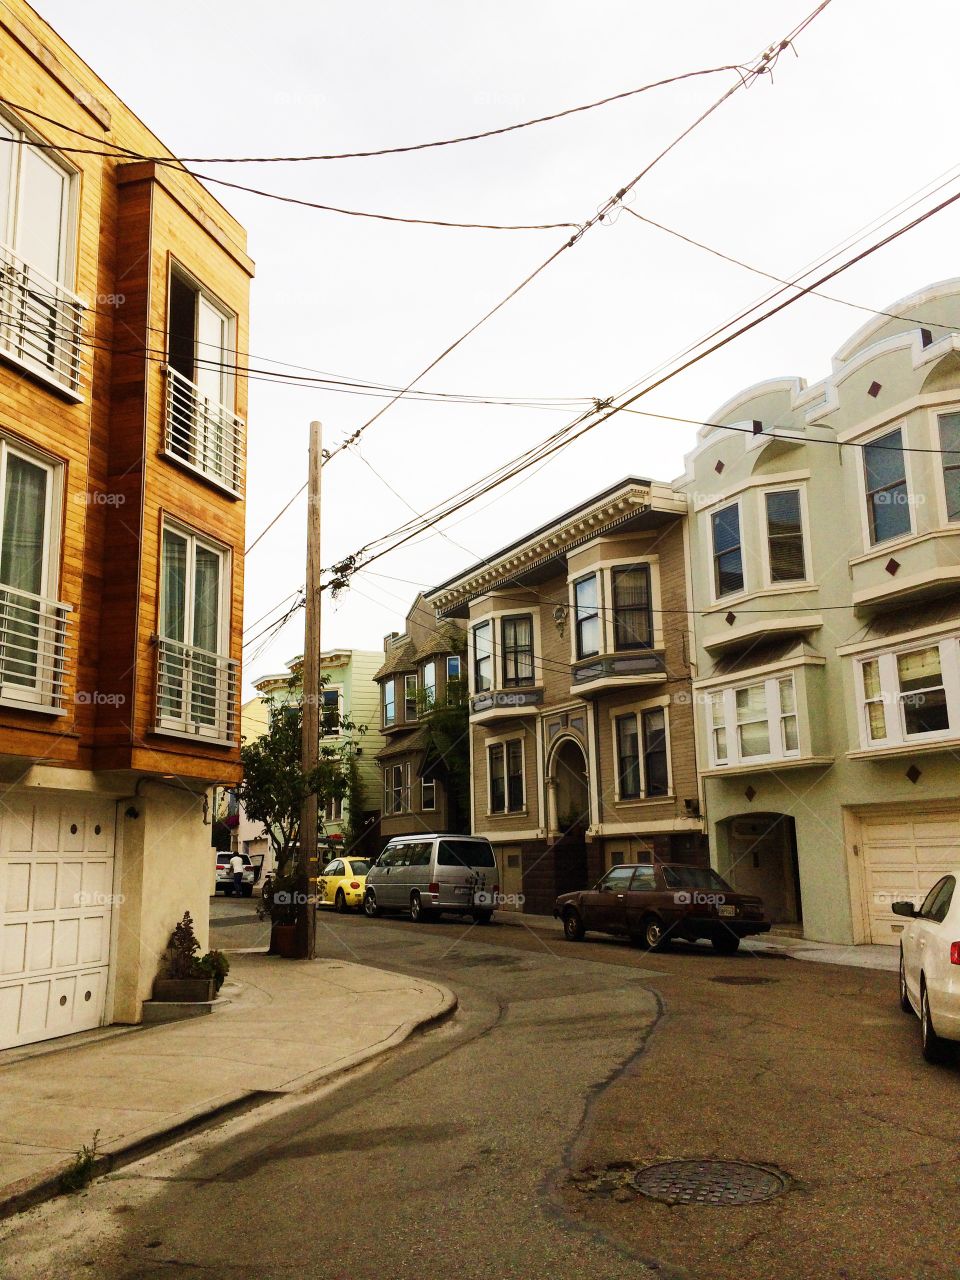 Street scene in San Francisco 